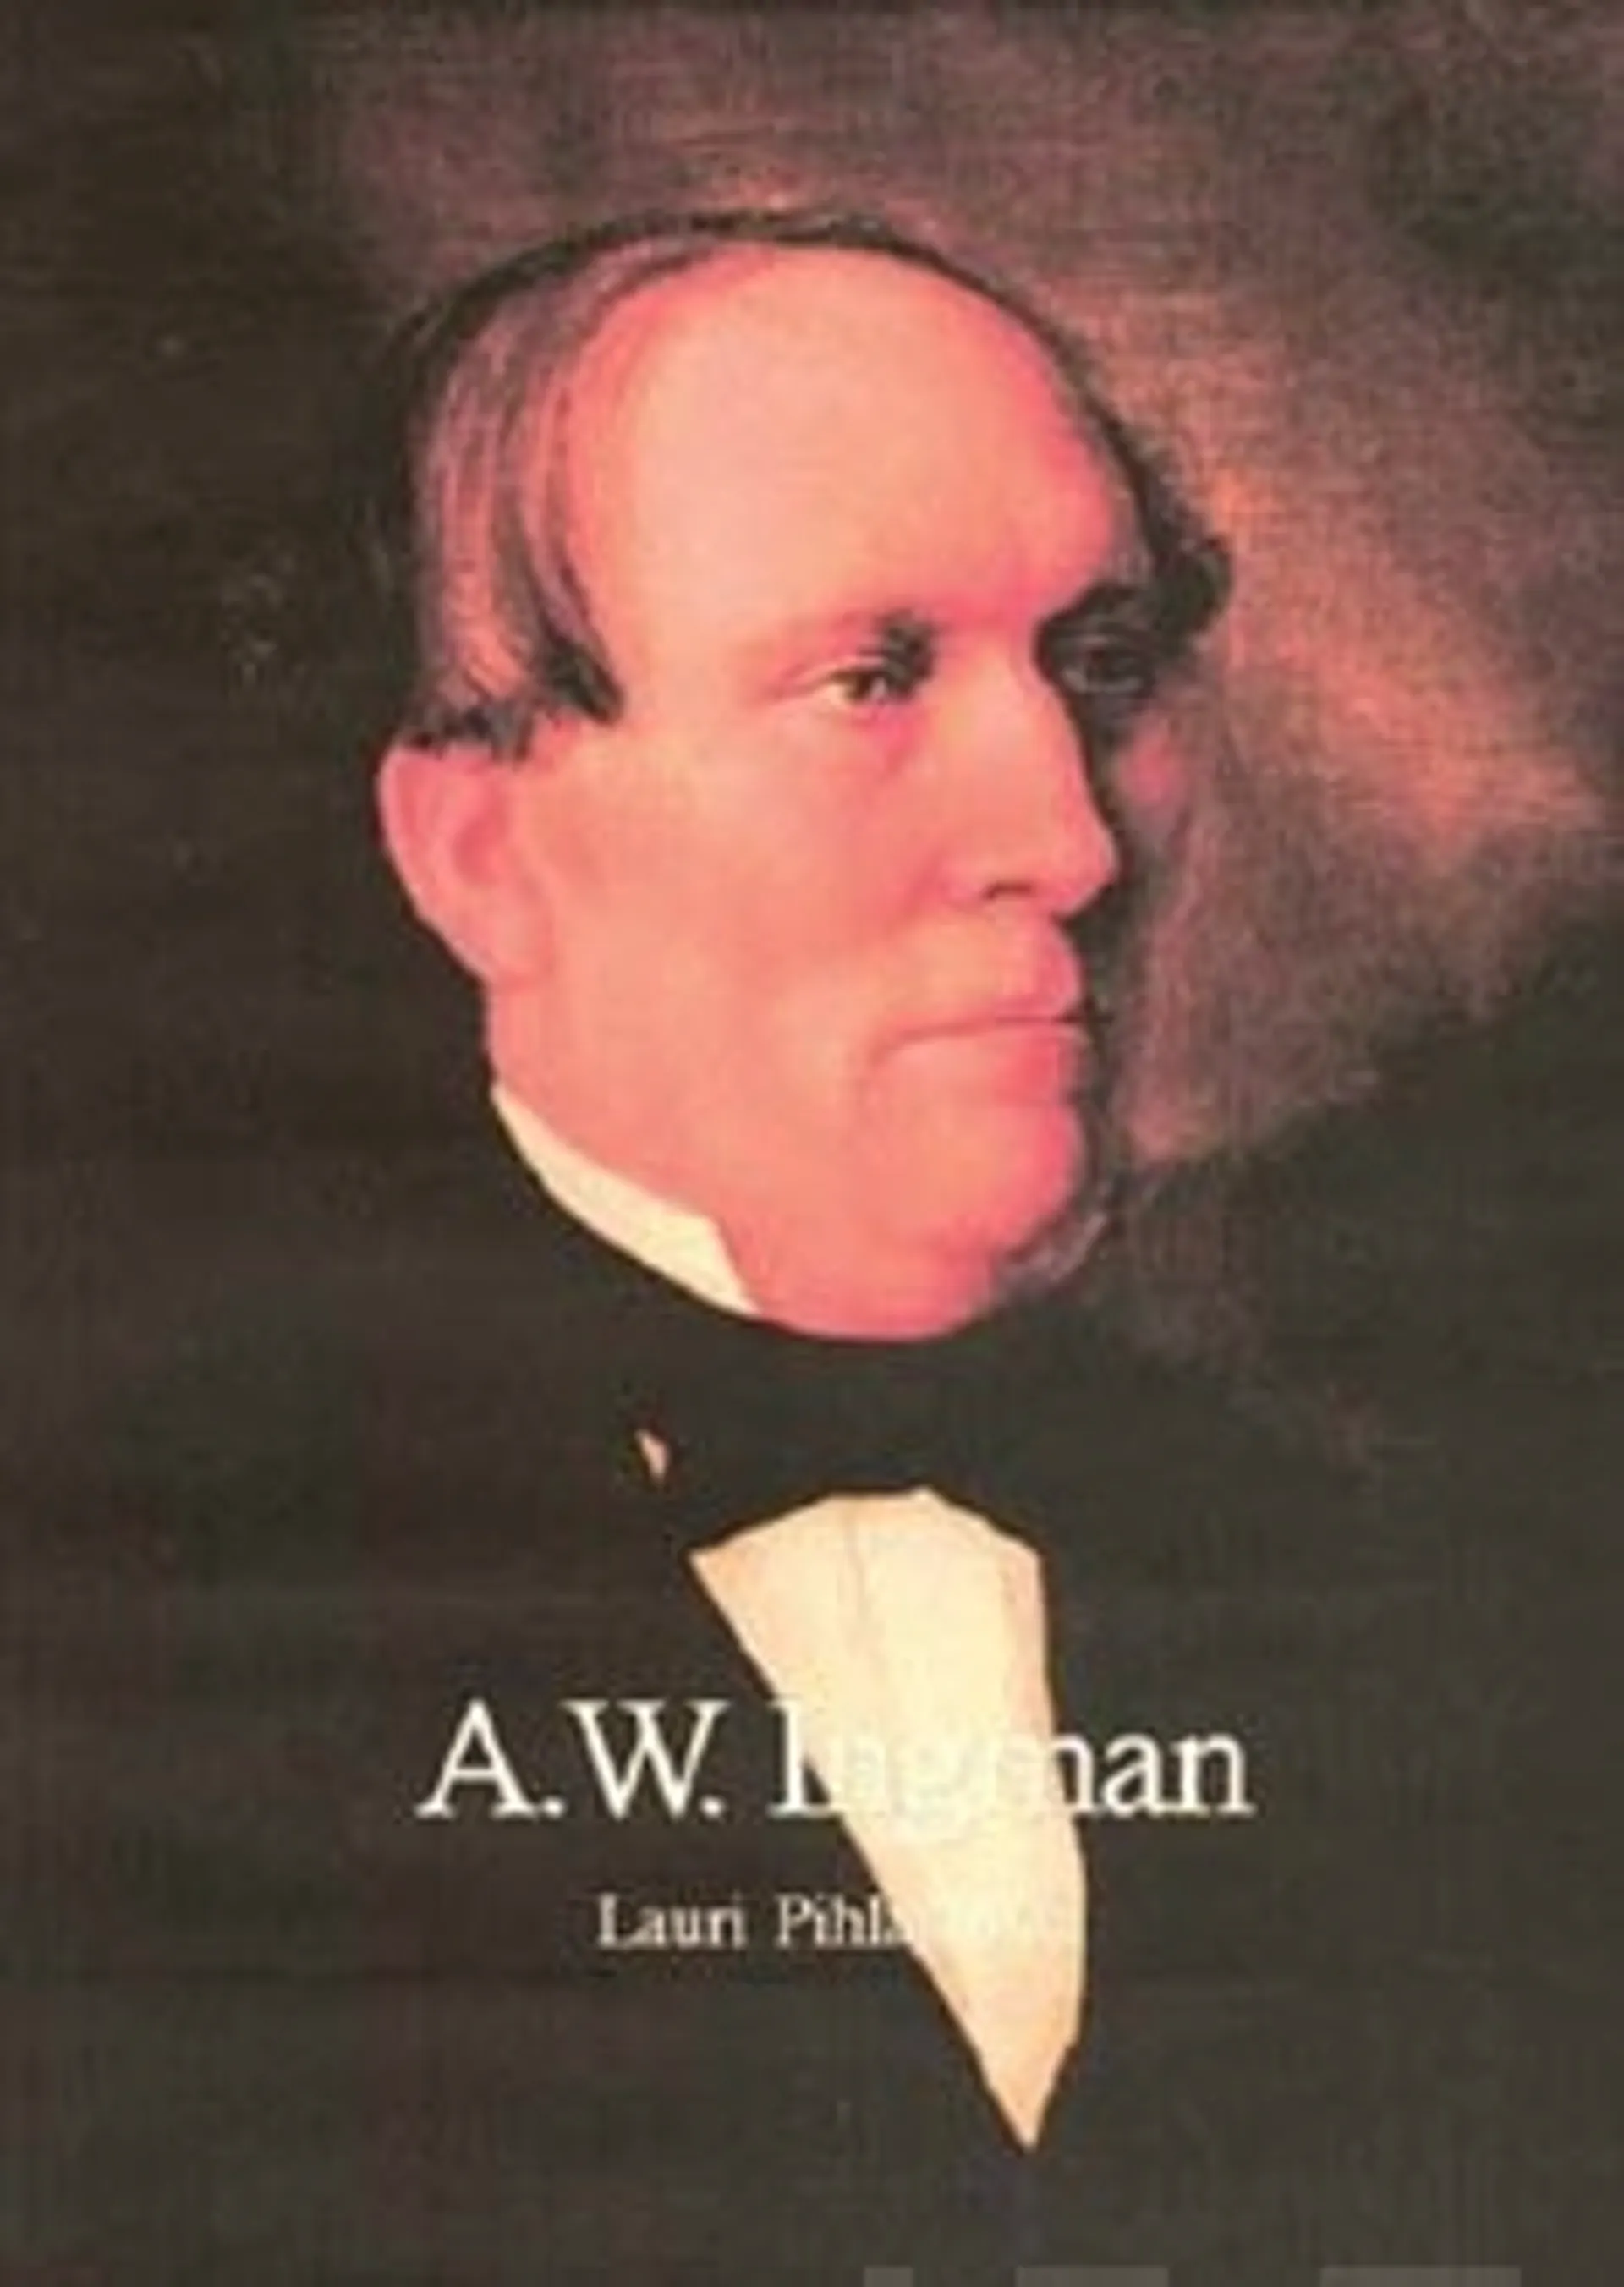 A.W. Ingman